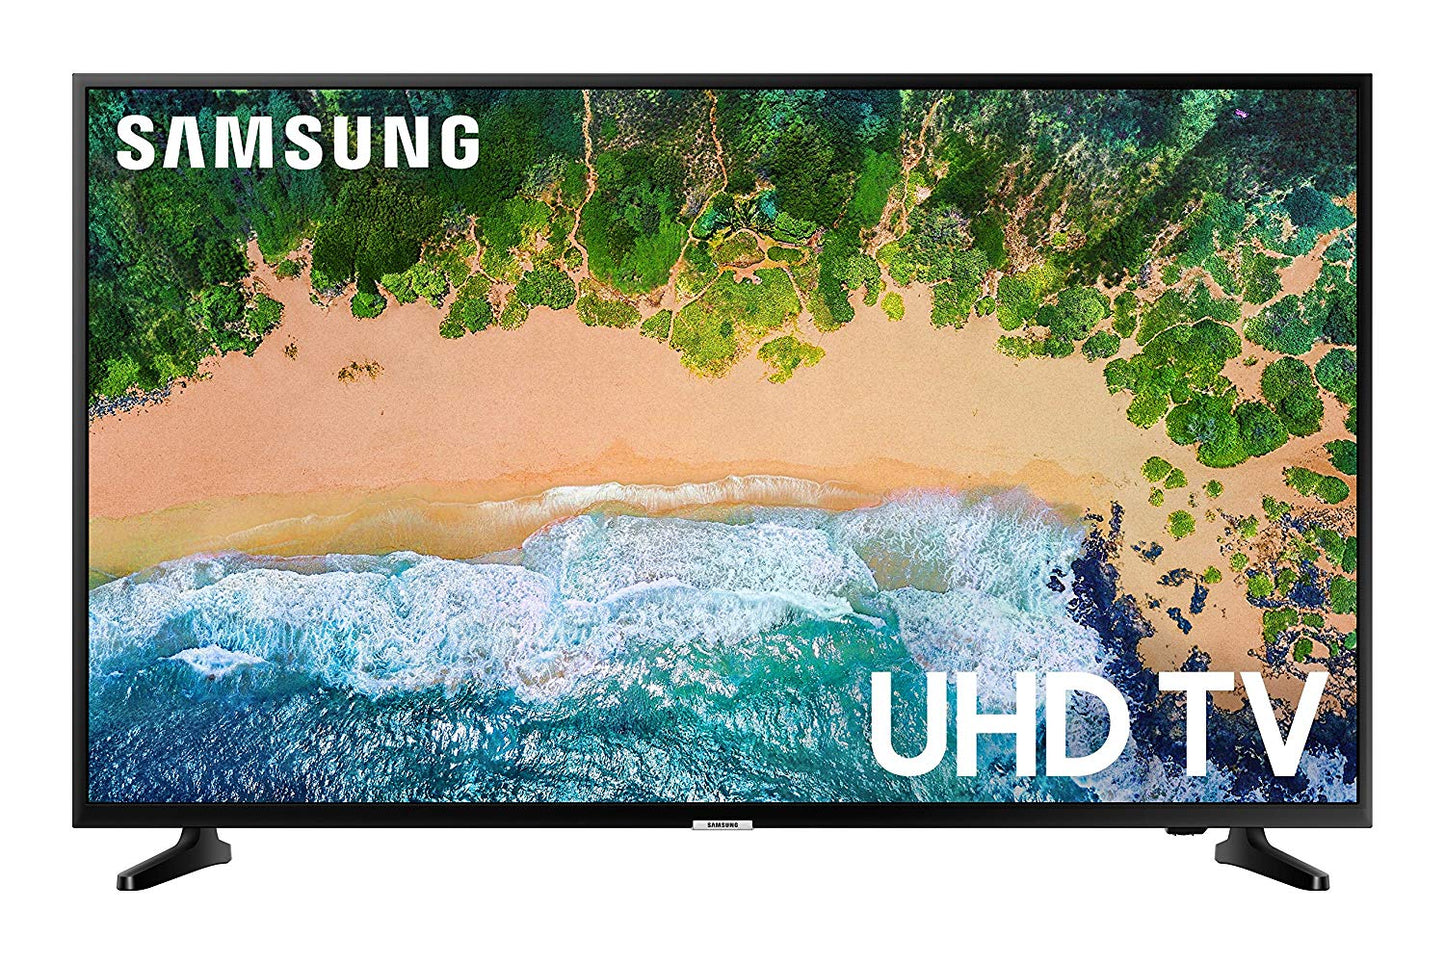 Samsung UN55NU6900 55-in Smart LED TV (2018)